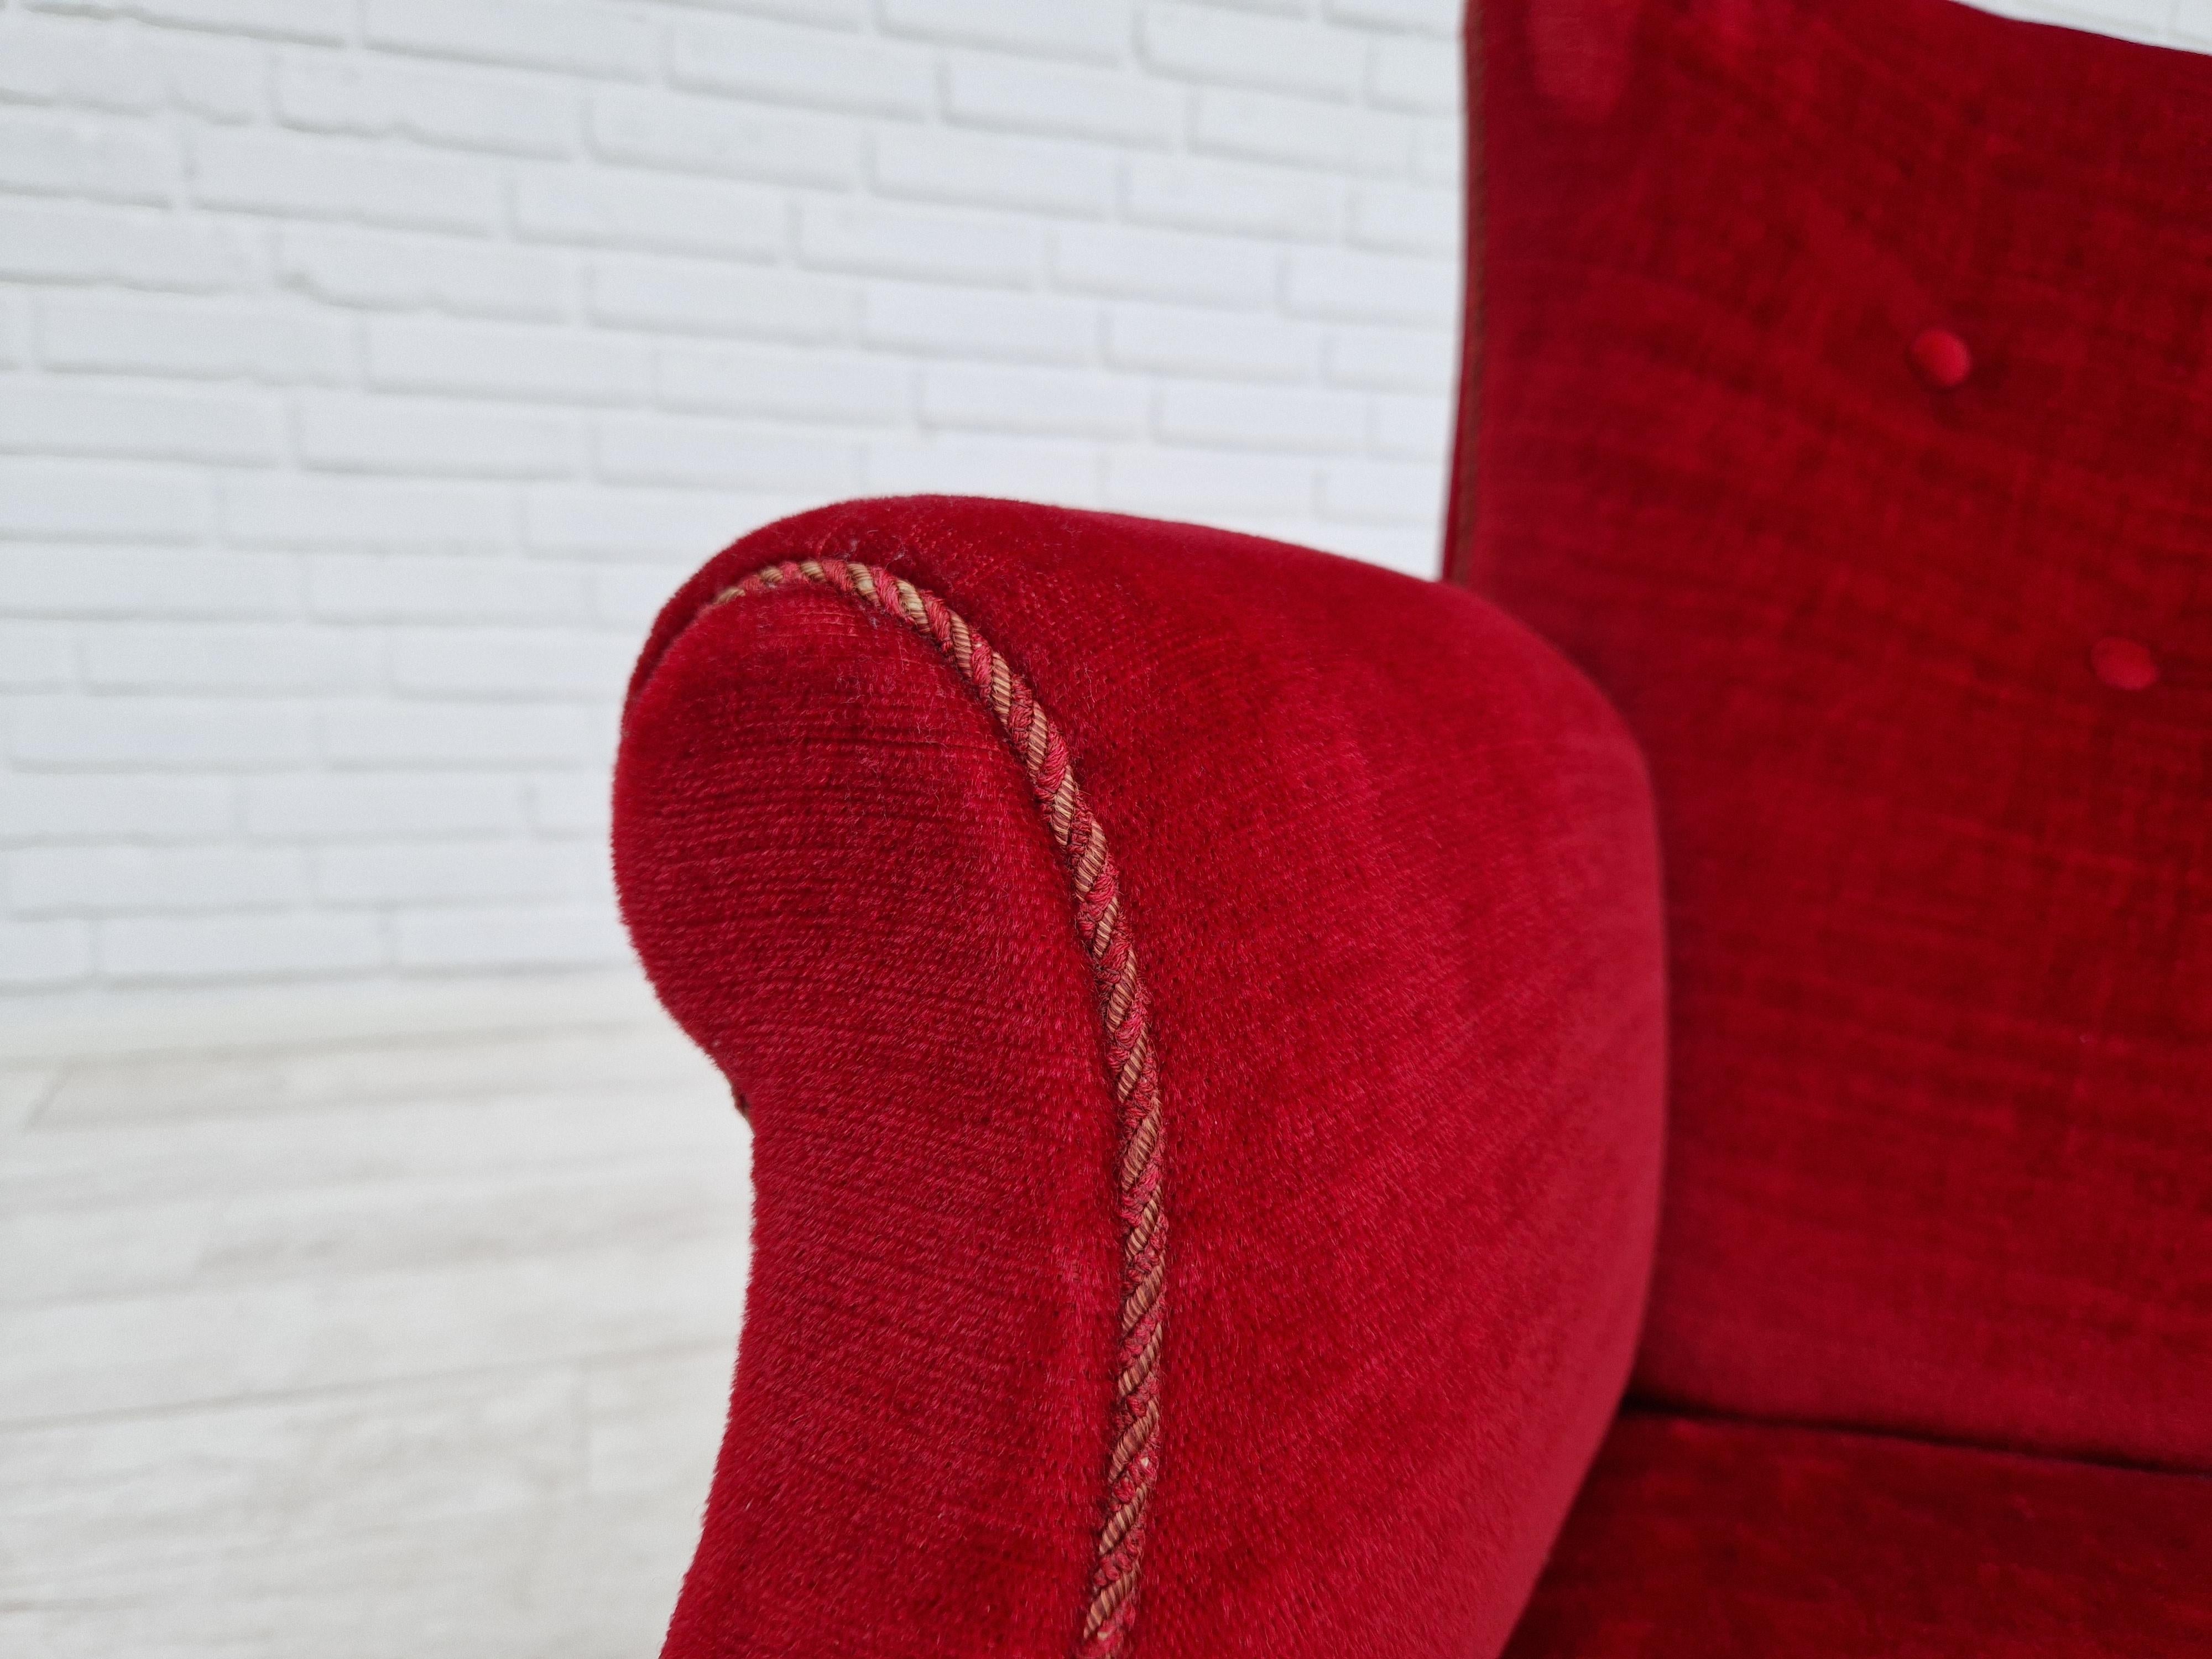 Chaise vintage à haut dossier de conception danoise. Fabriqué vers 1960 par un fabricant de meubles danois. Sellerie d'origine en velours rouge cerise en bon état, pas de taches, pas d'odeur. Légères traces d'usure sur l'accoudoir droit. Pieds en